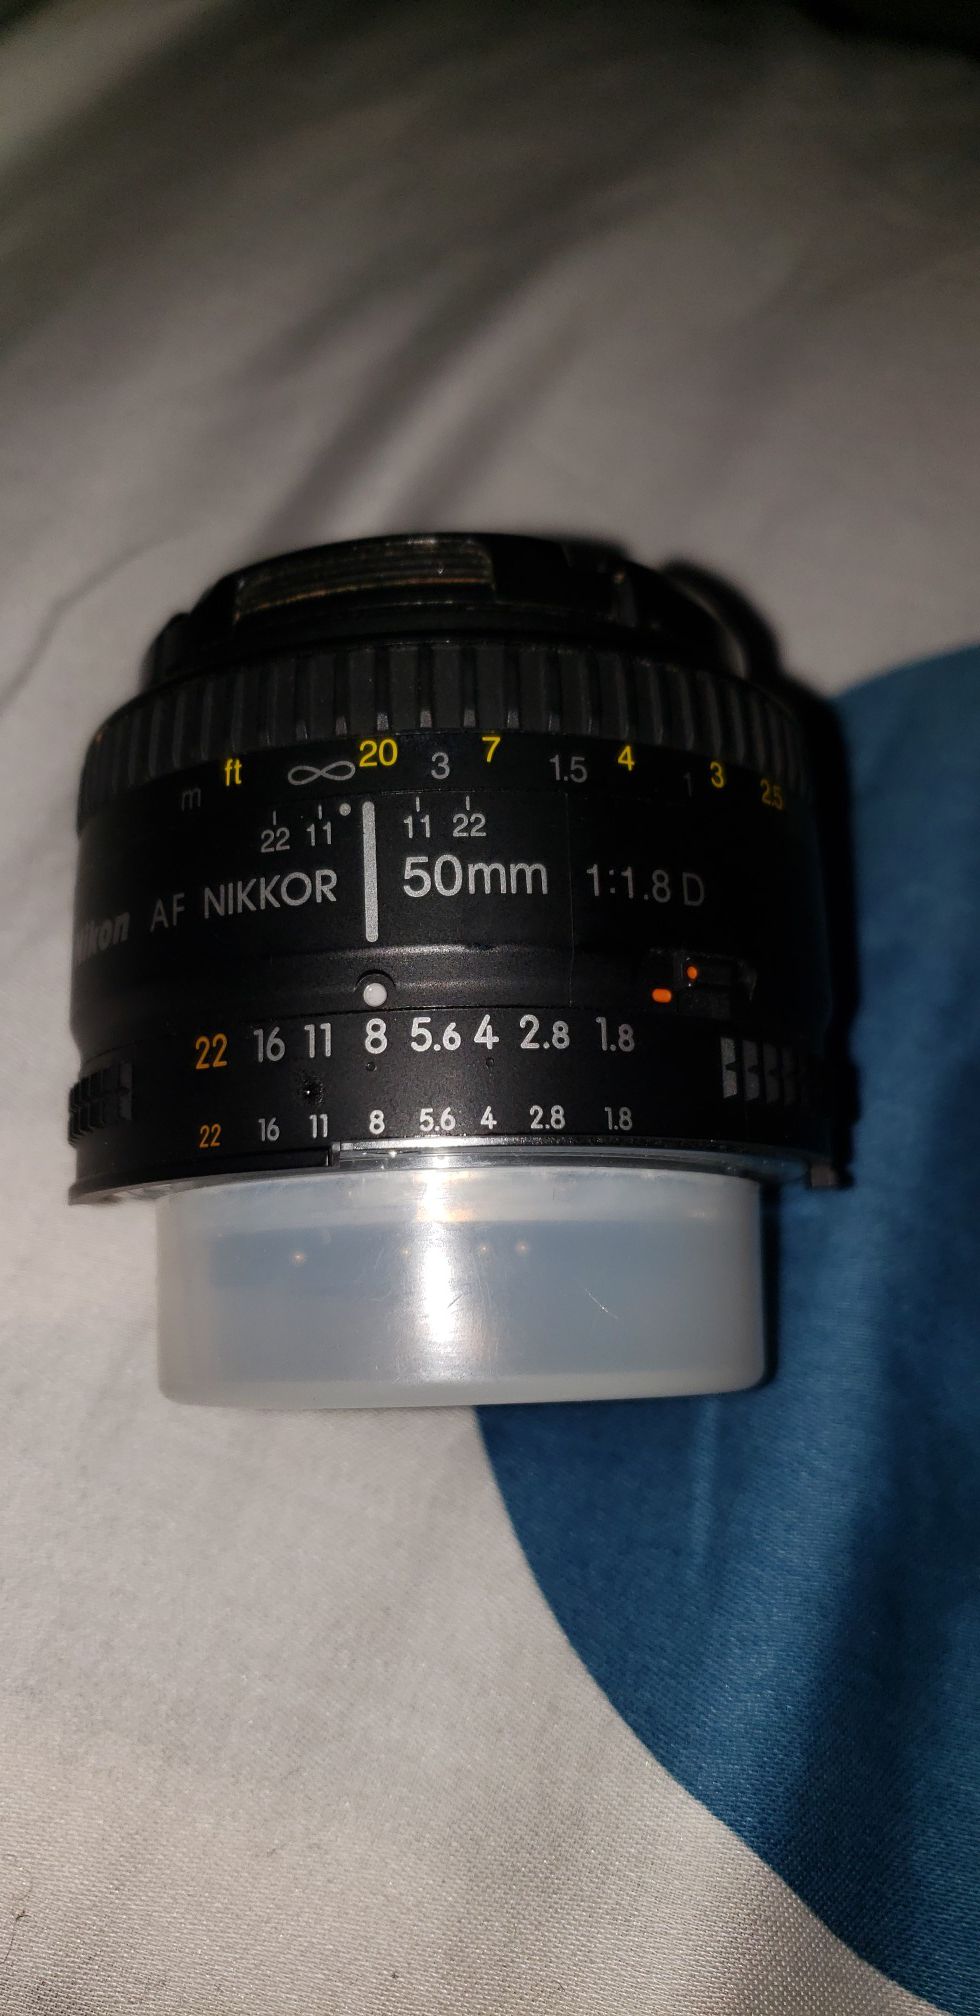 Nikon af nikkor 50mm f/1.8d